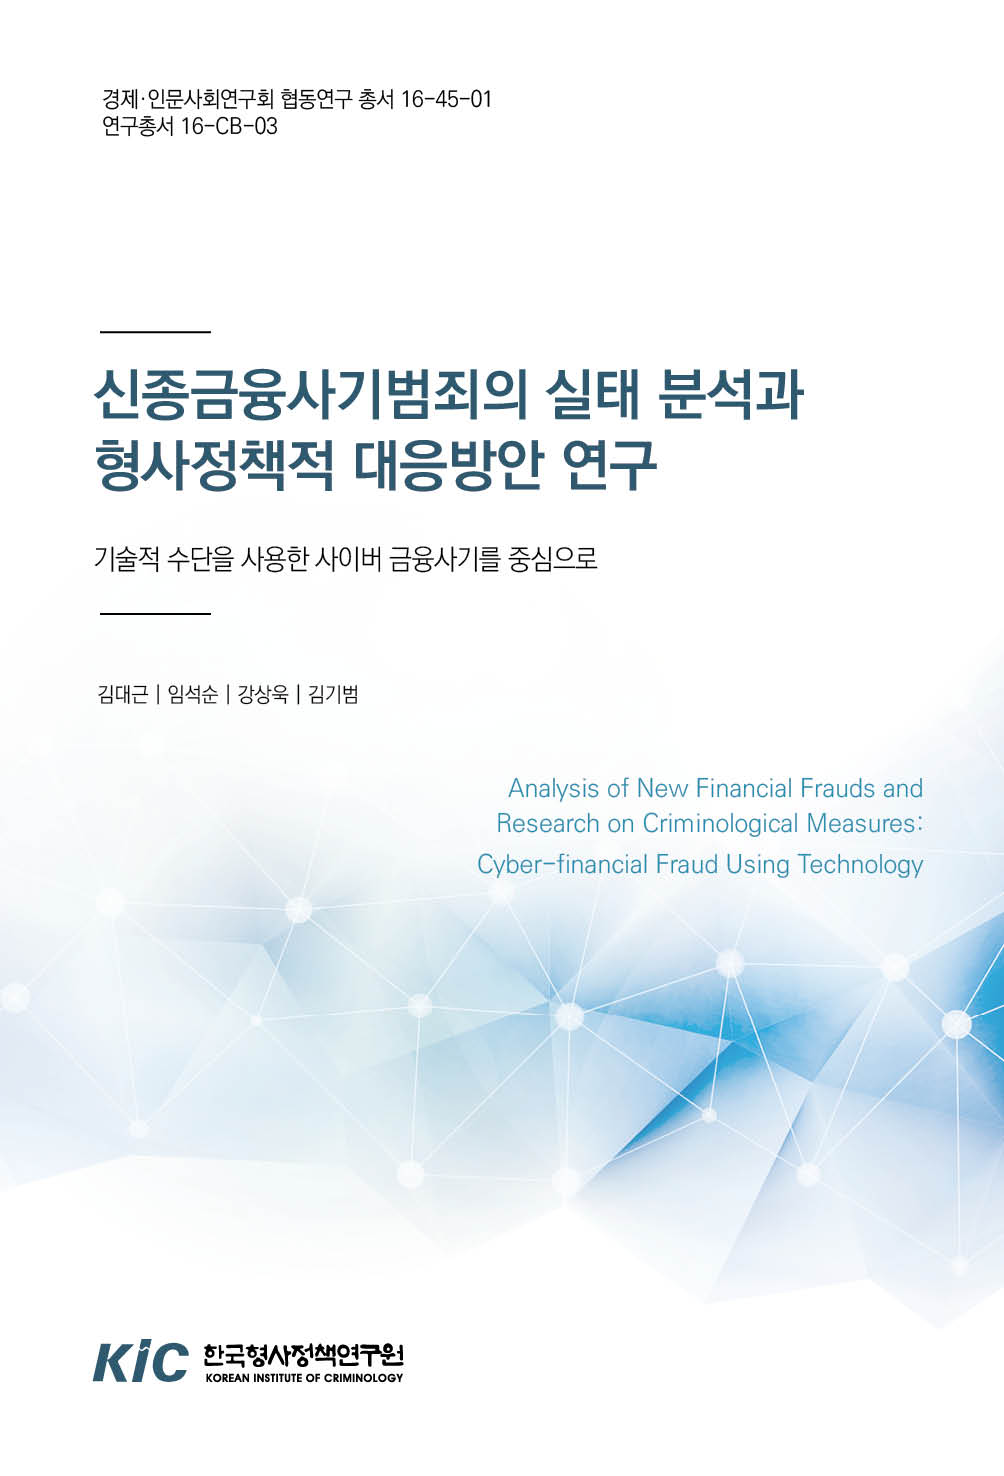 신종금융사기범죄의 실태 분석과 형사정책적 대응방안 연구: 기술적 수단을 사용한 사이버 금융사기를 중심으로